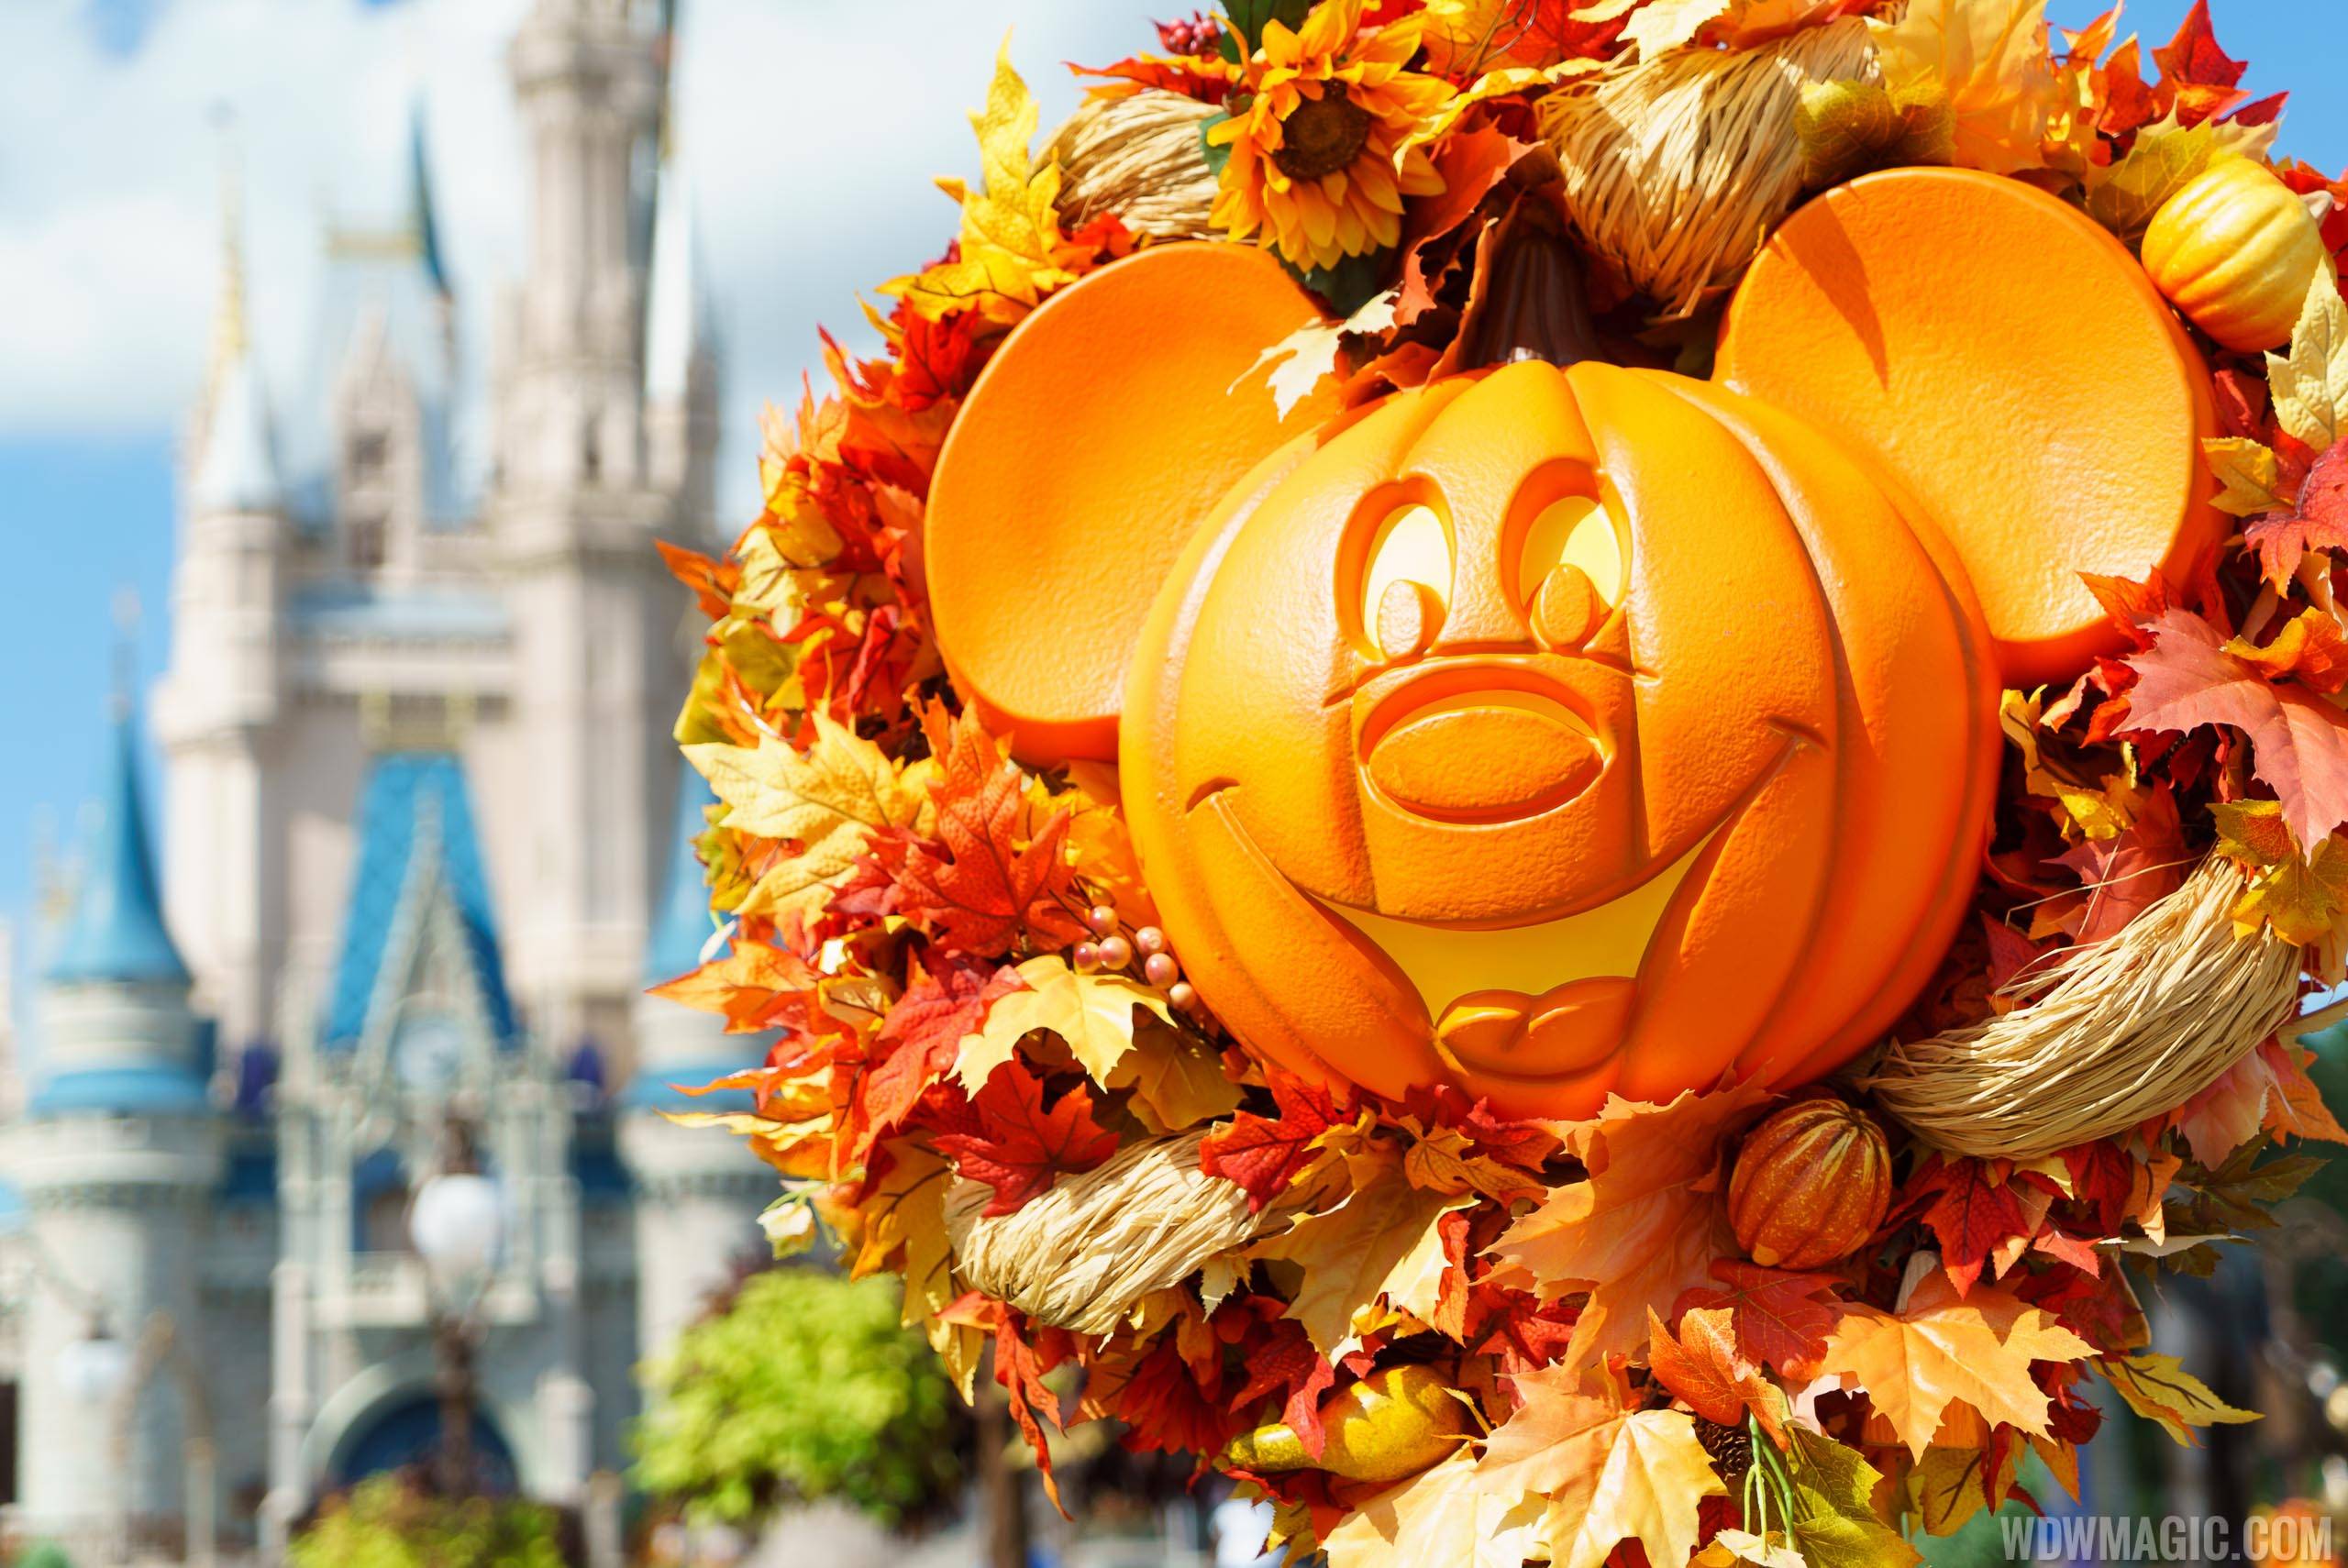 Magic Kingdom's fall Halloween decorations 2016